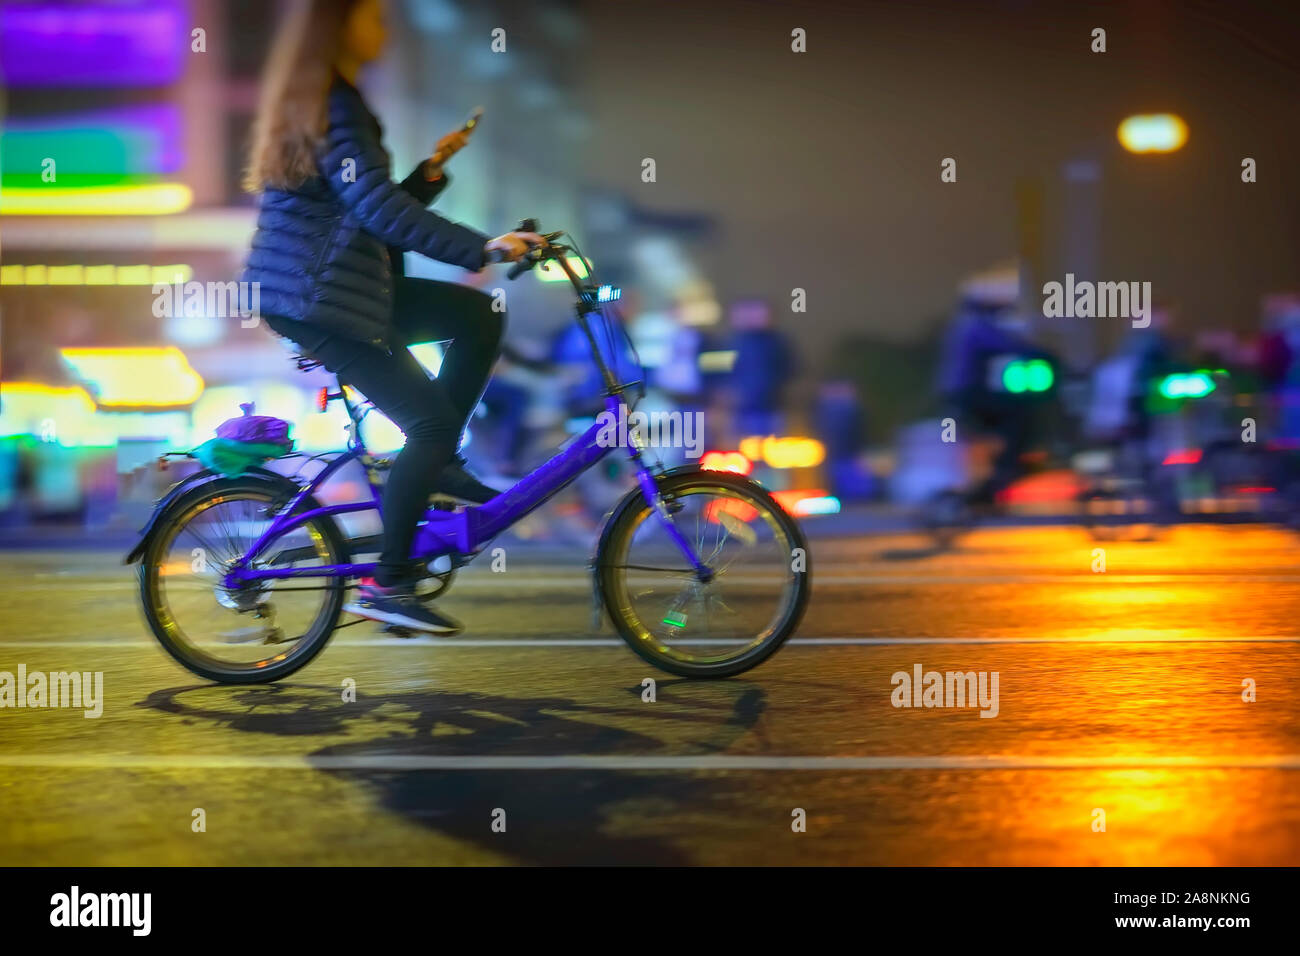 Abstract irriconoscibile ragazza Bicicletta Equitazione con lo smartphone, la città di notte, illuminazione bokeh, motion blur. Uno stile di vita sano, attività di svago di concetto. Foto Stock